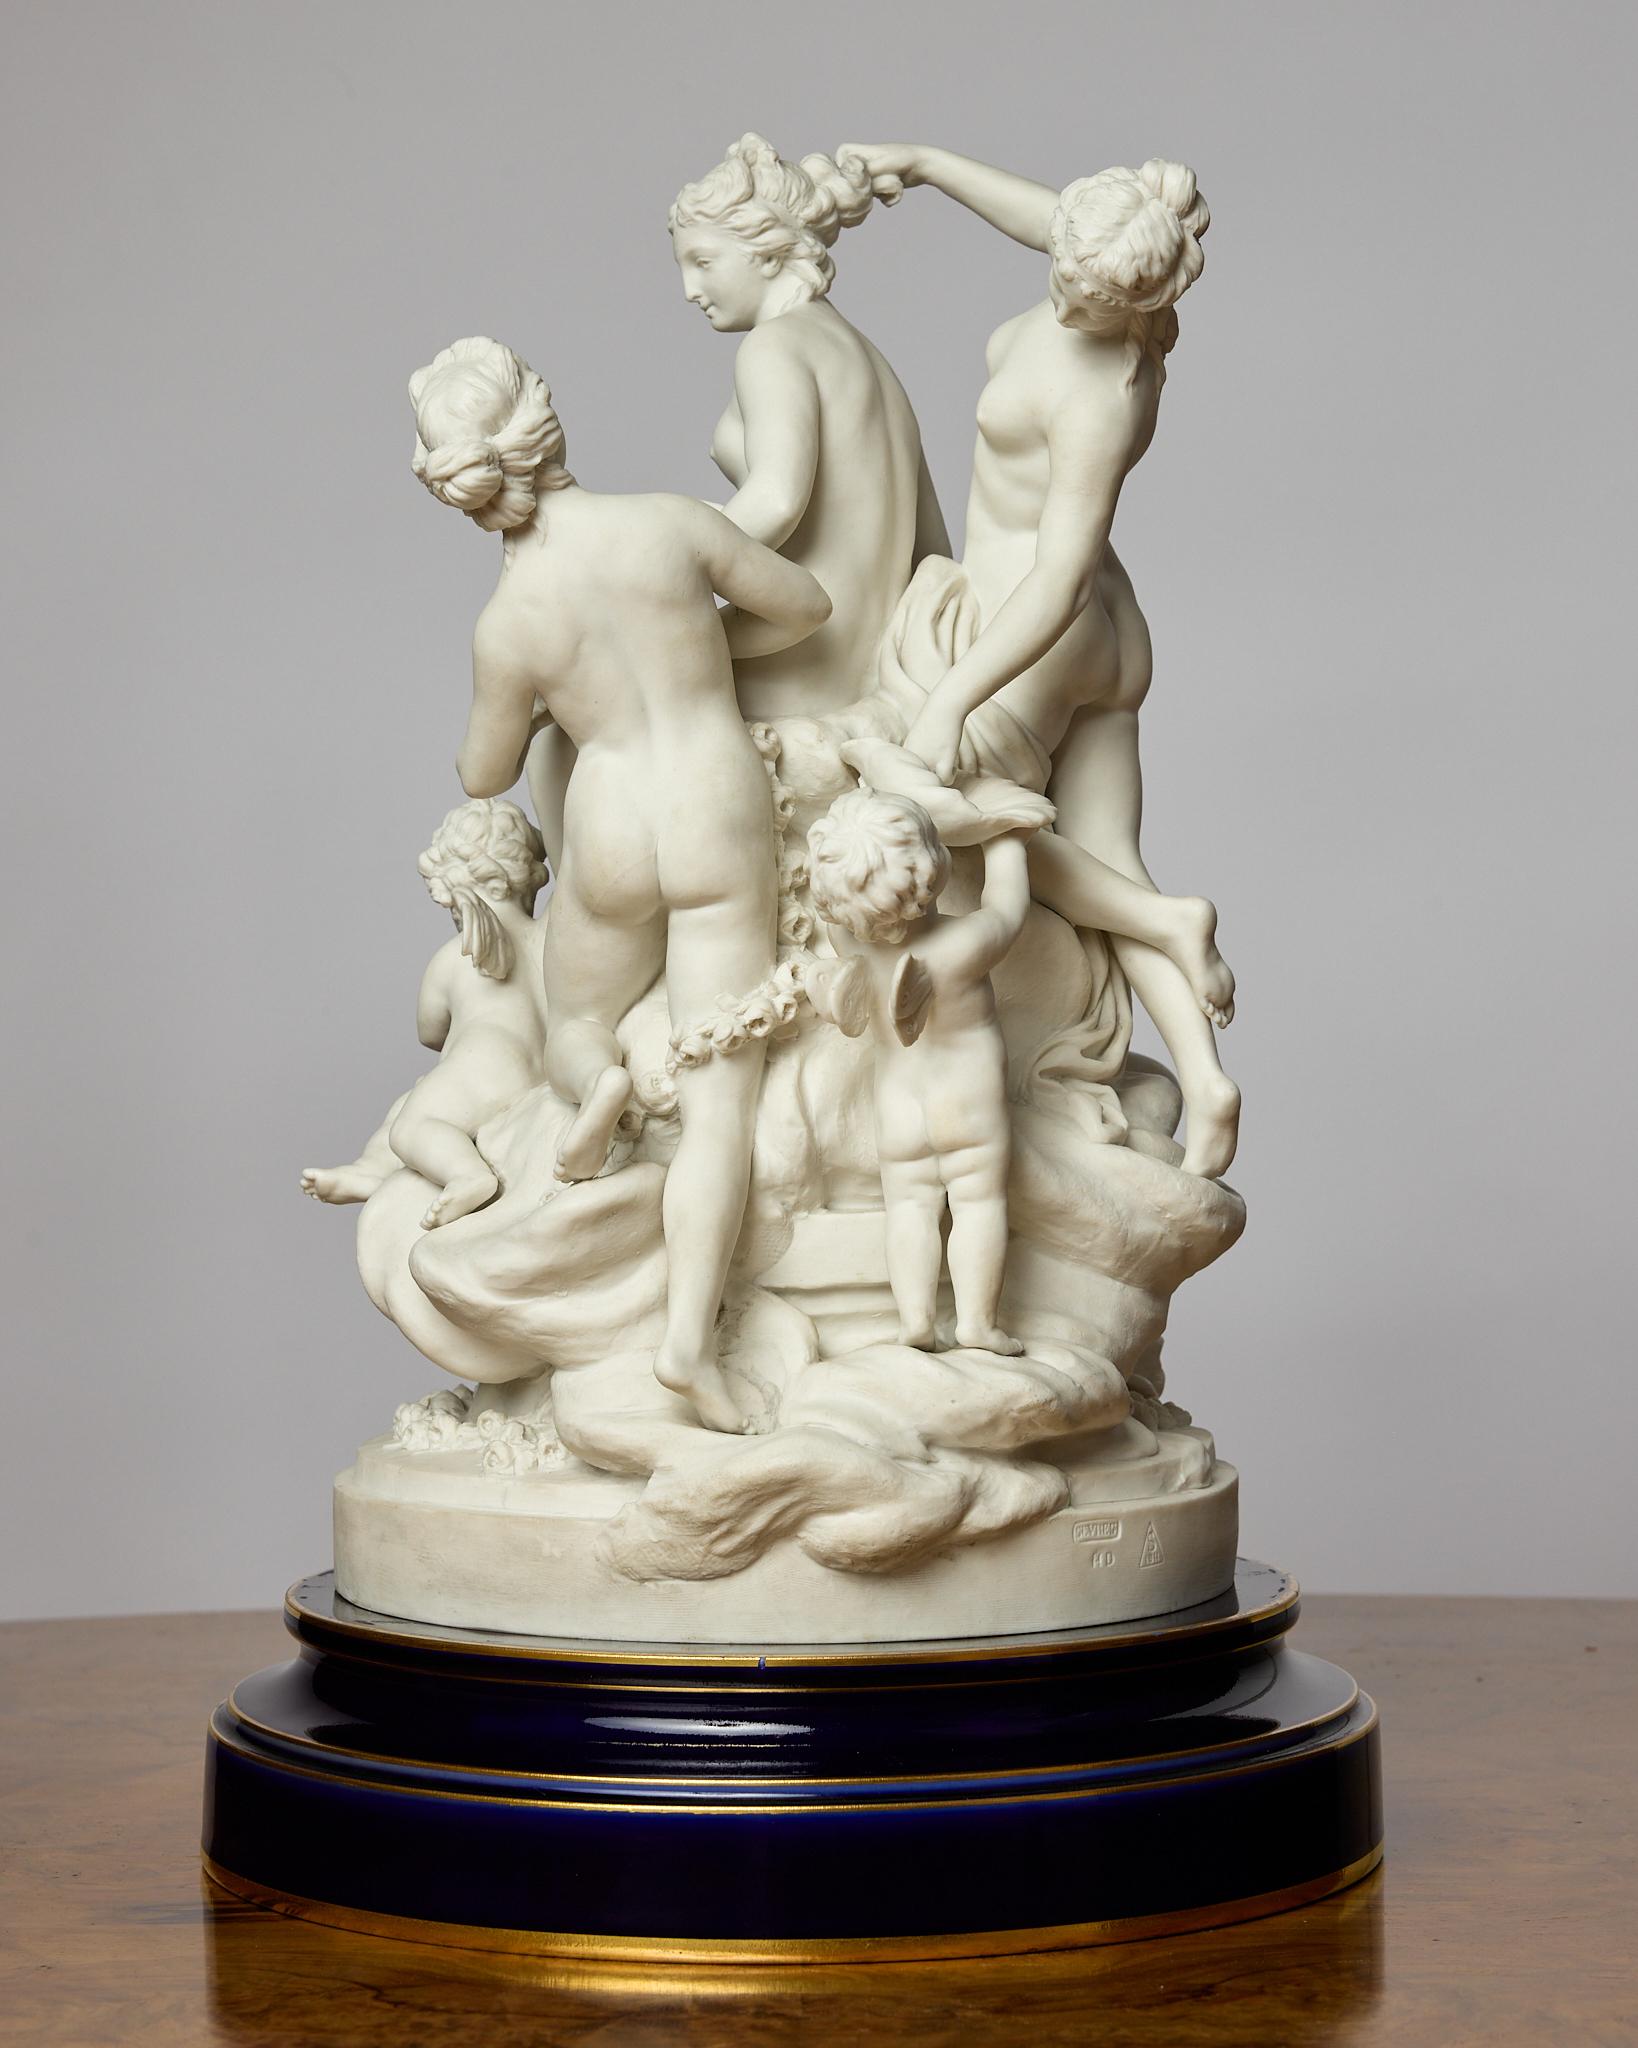 Es handelt sich um eine herrliche Figurengruppe aus Biskuit gebranntem Porzellan, die die Toilette der Venus im Stil Louis XVI darstellt. Die Skulptur wurde ursprünglich von Louis-Simon Boizot (Franzose, 1743-1809) modelliert. 
Venus sitzt, umgeben